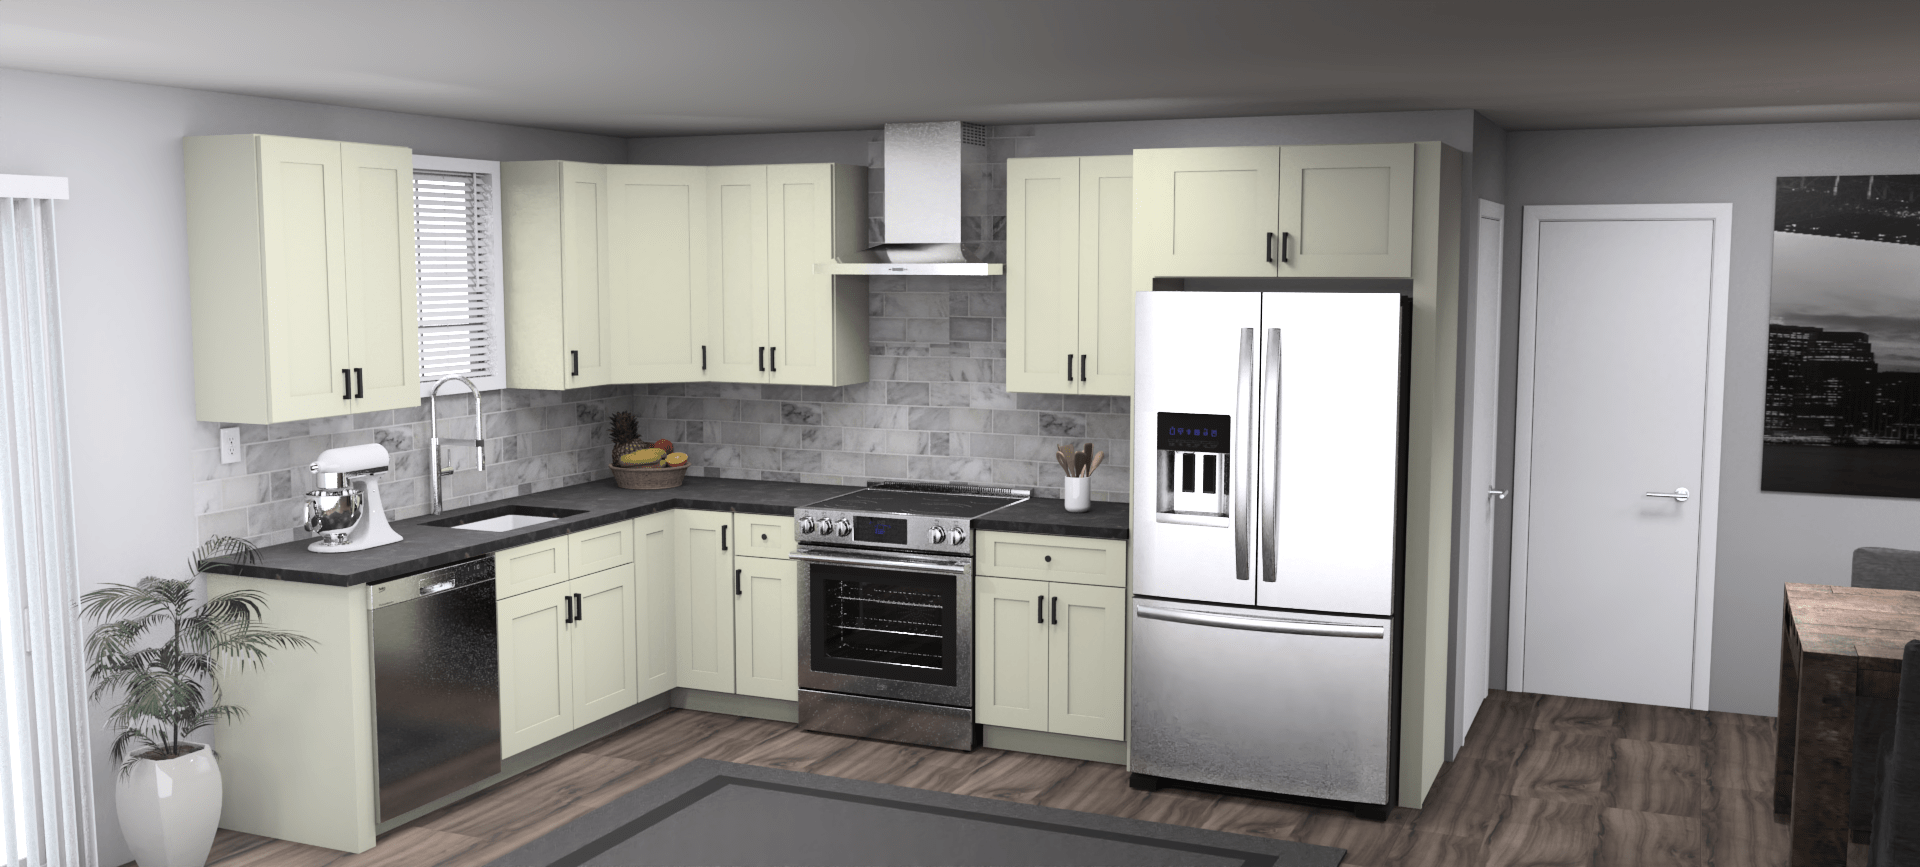 Fabuwood Allure Galaxy Linen 8 x 12 L Shaped Kitchen Main Layout Photo